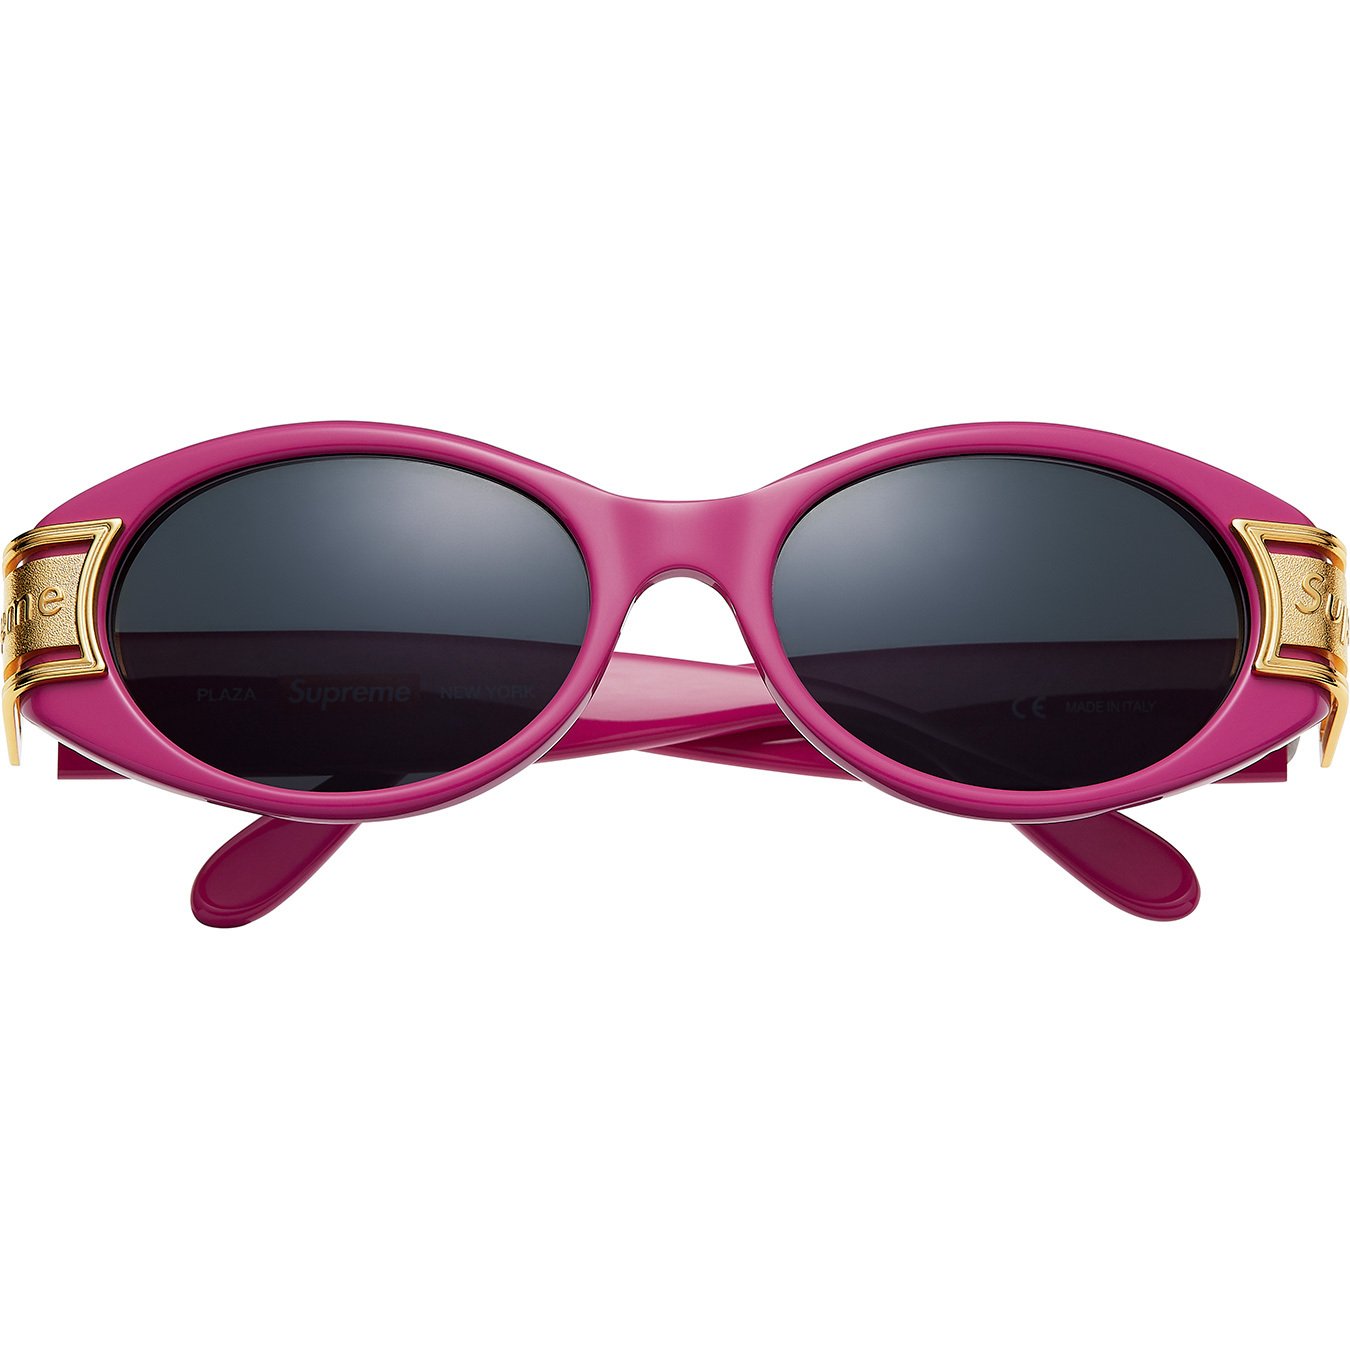 Buy Supreme Sunglasses Accessories - StockX